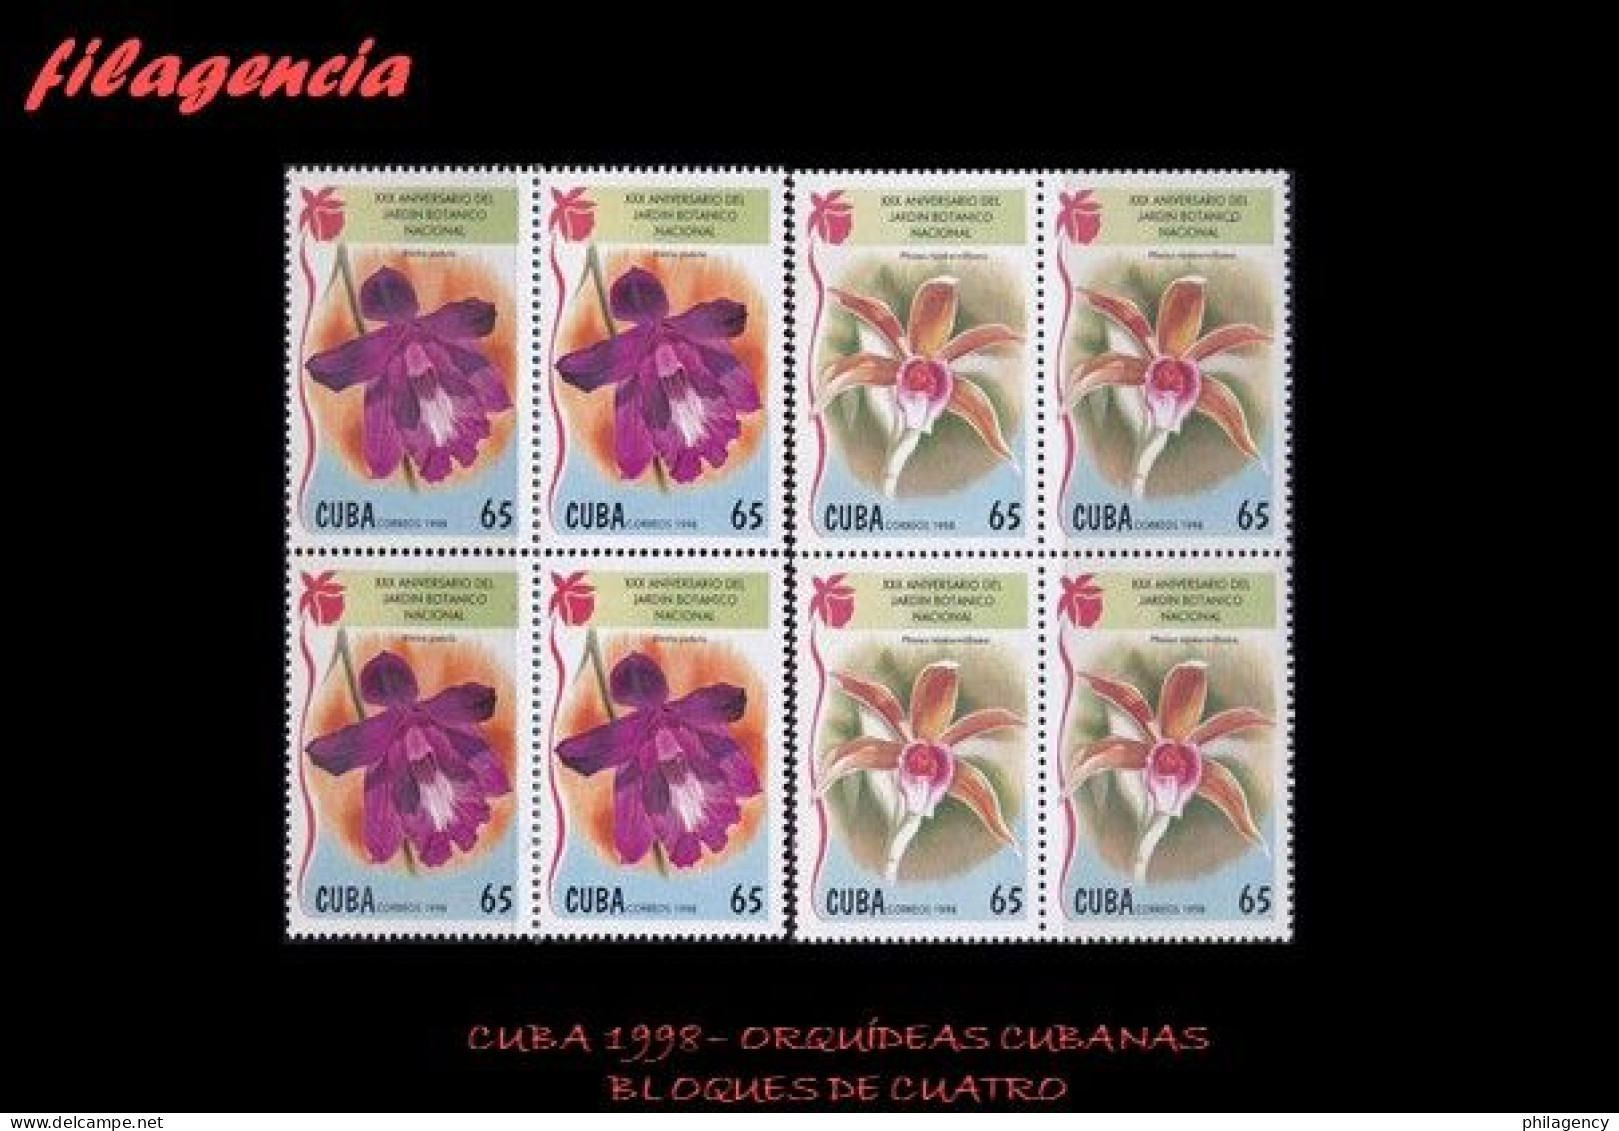 CUBA. BLOQUES DE CUATRO. 1998-23 FLORA. ORQUÍDEAS CUBANAS - Ongebruikt